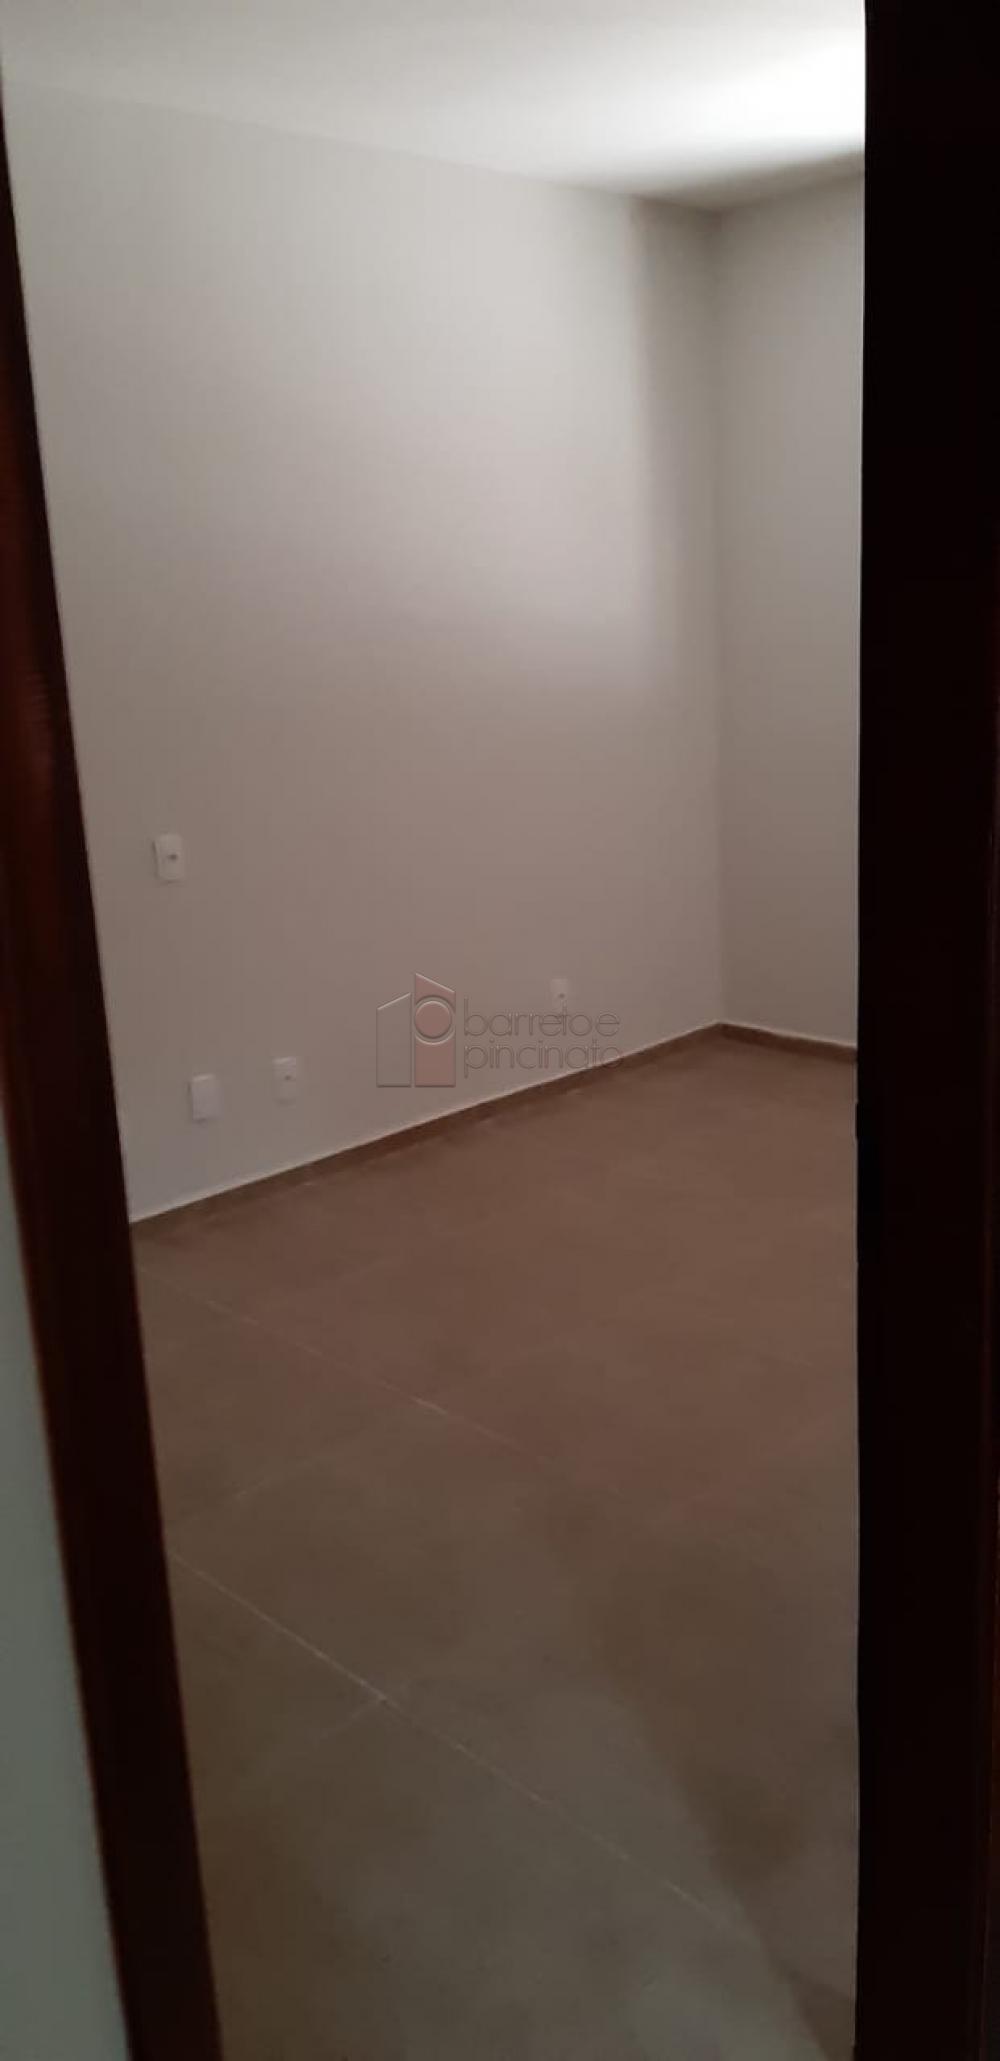 Alugar Casa / Padrão em Jundiaí R$ 6.800,00 - Foto 17